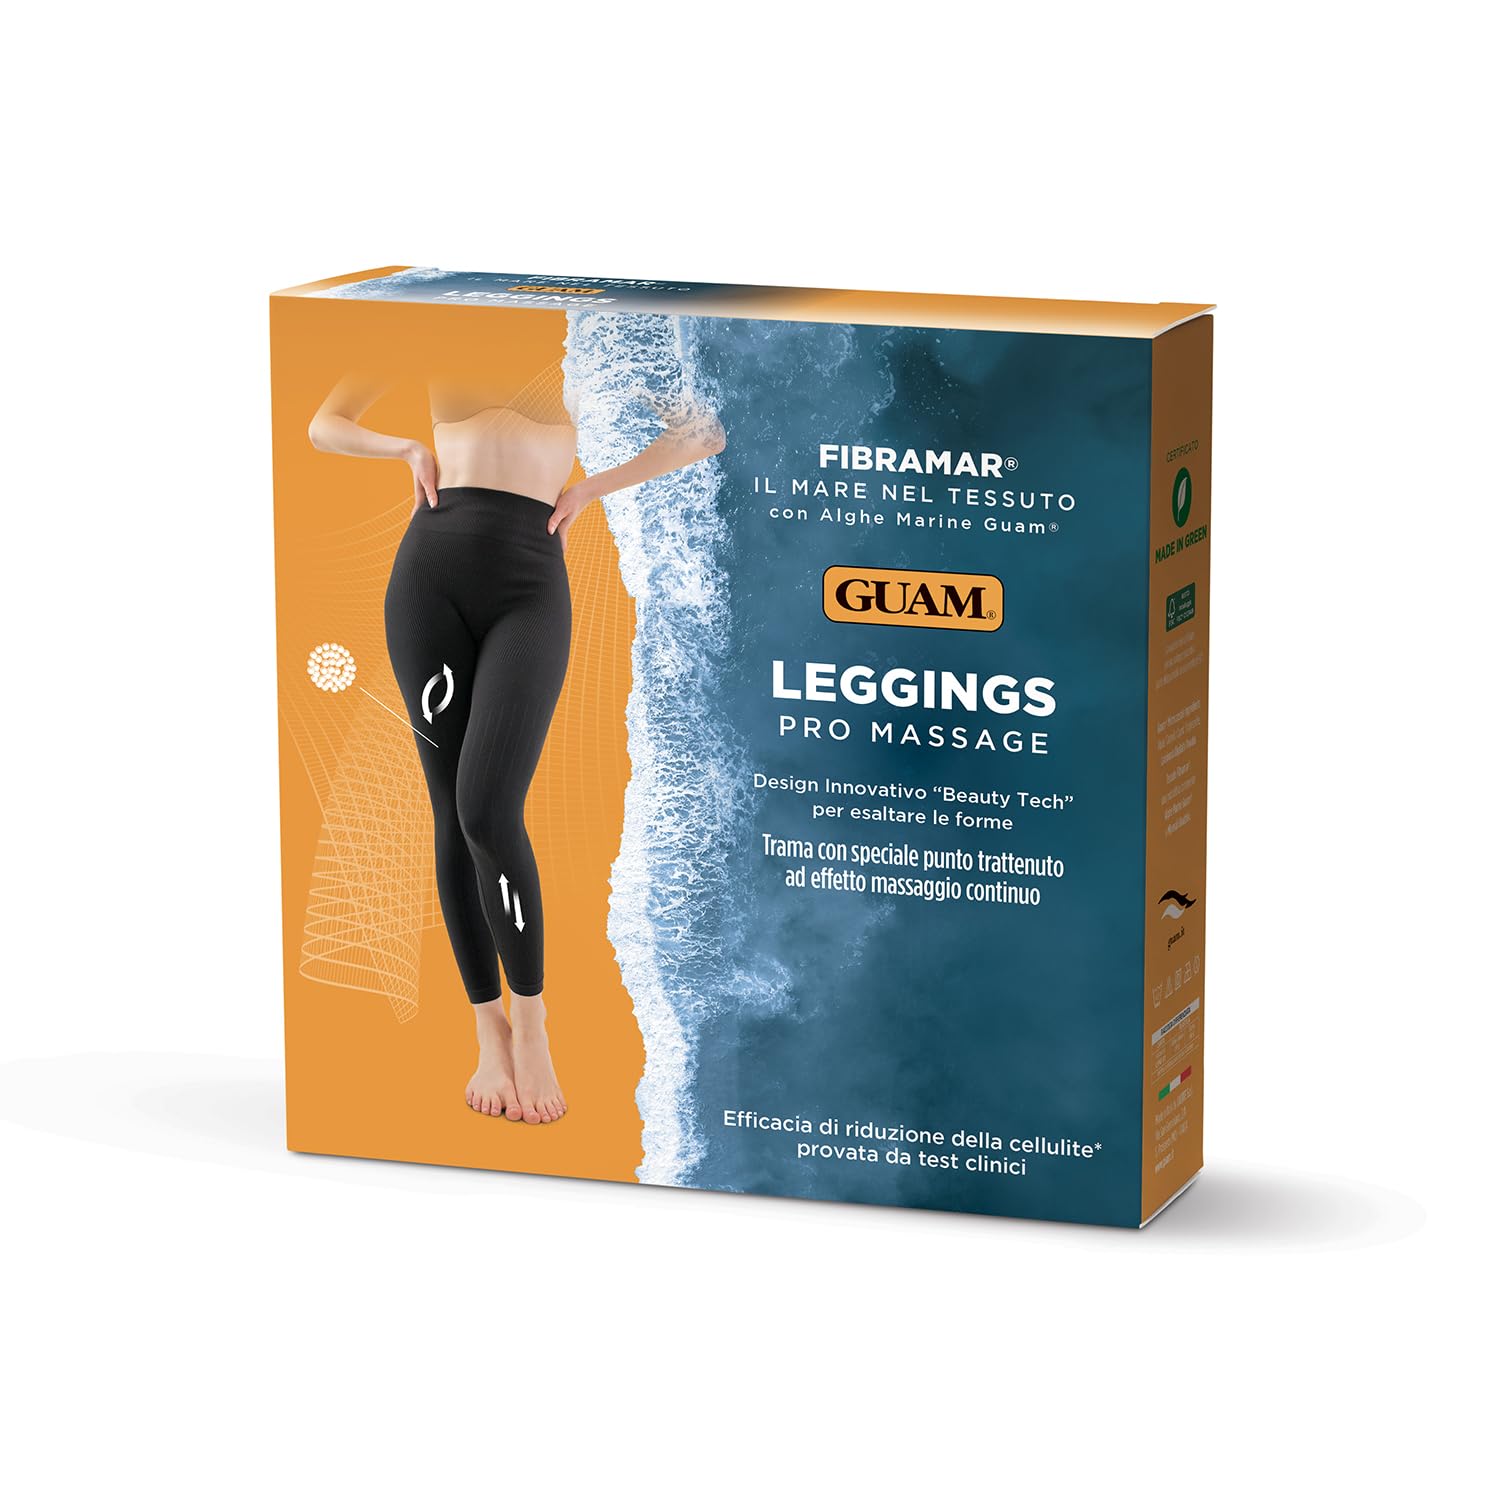 Guam, Fibramar Leggings Pro Massage, Leggings mit Meeresalgen, mit massierendem Muster, gegen Cellulite und schlankend, Made in Italy, Größe L/XL (46-48)